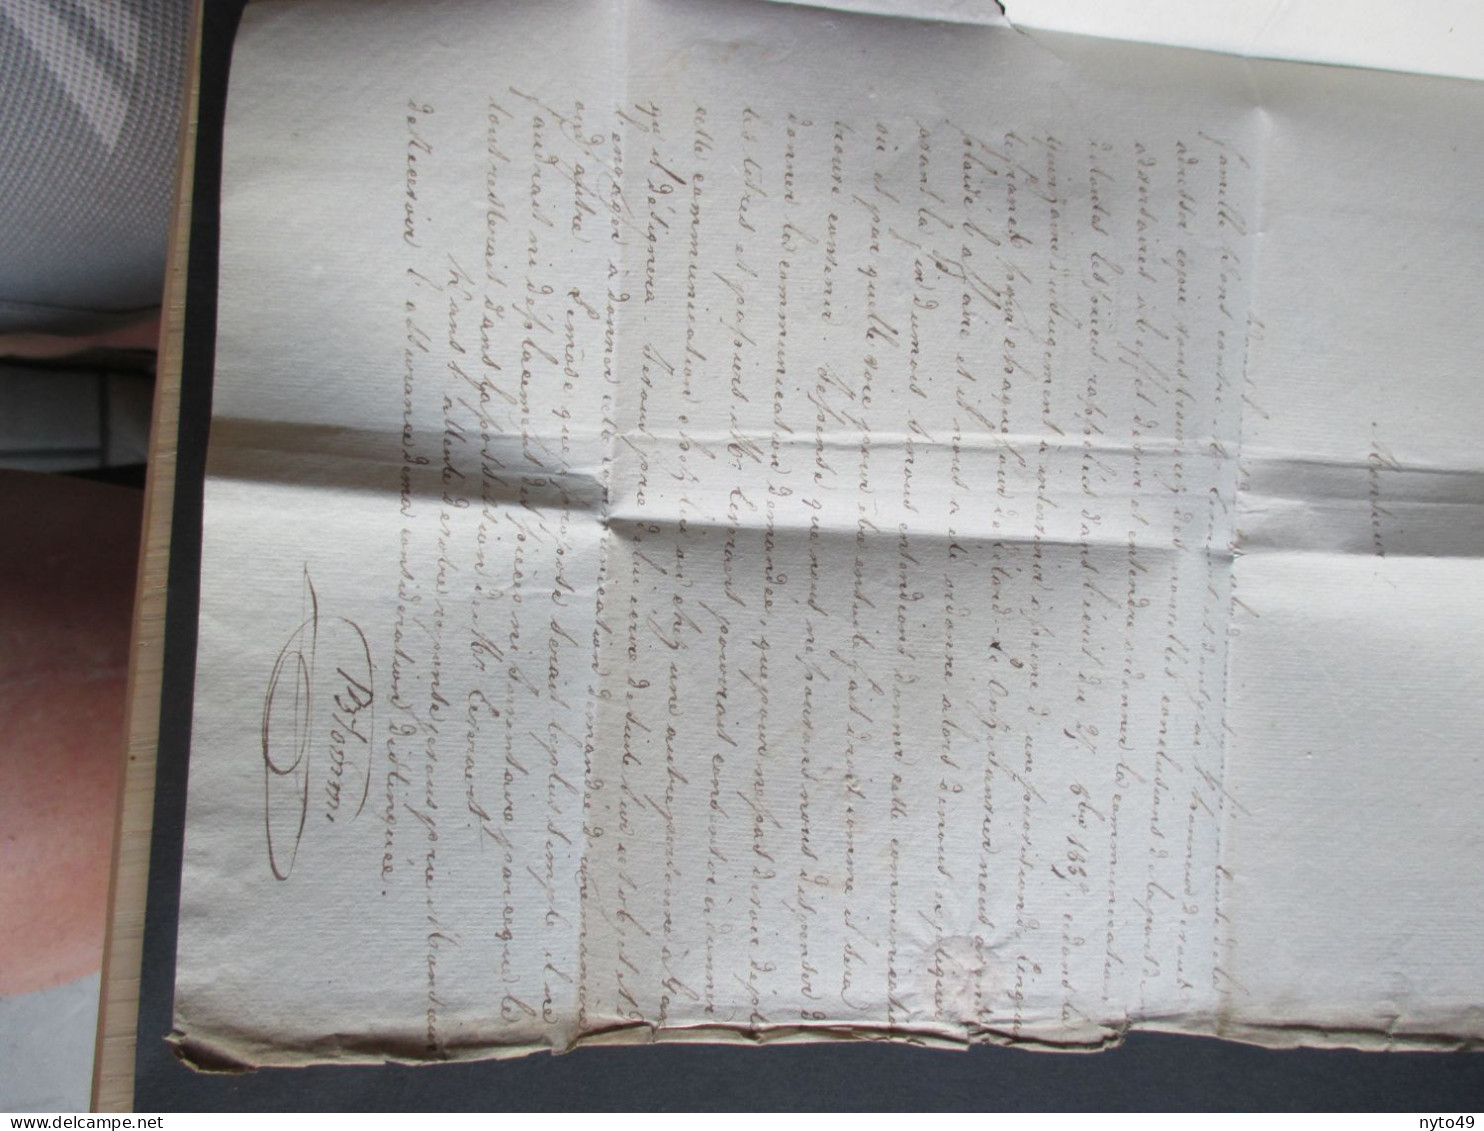 Brief  Verstuurd Uit Dendermonde Naar Beveren Op 21/01/1838 - 1830-1849 (Independent Belgium)